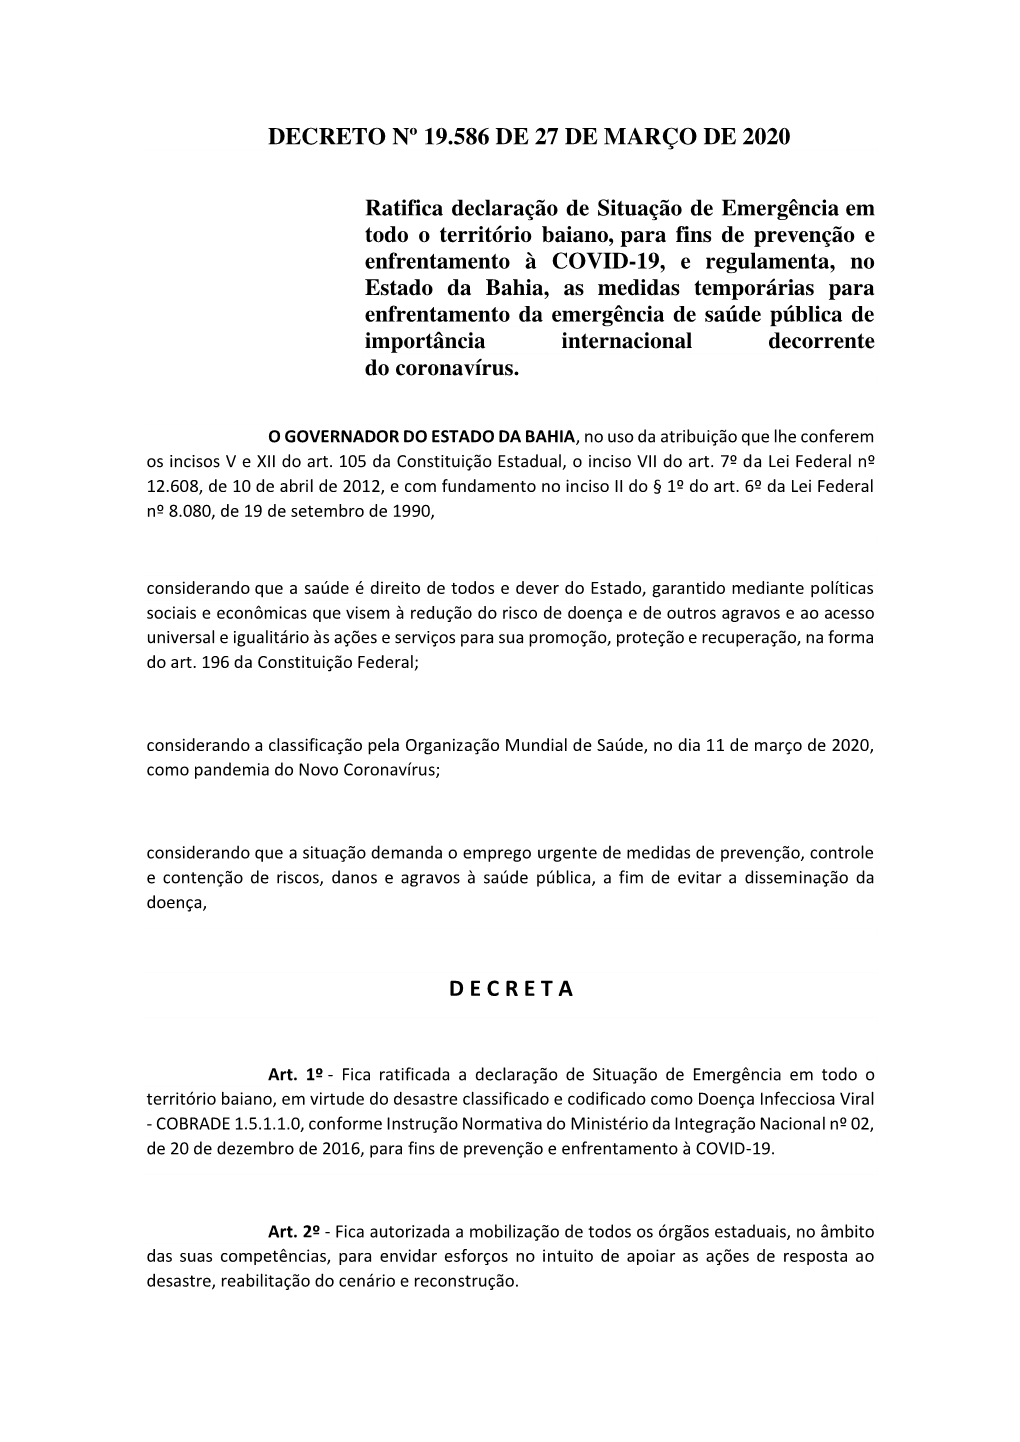 Decreto Nº 19.586 De 27 De Março De 2020 D E C R E